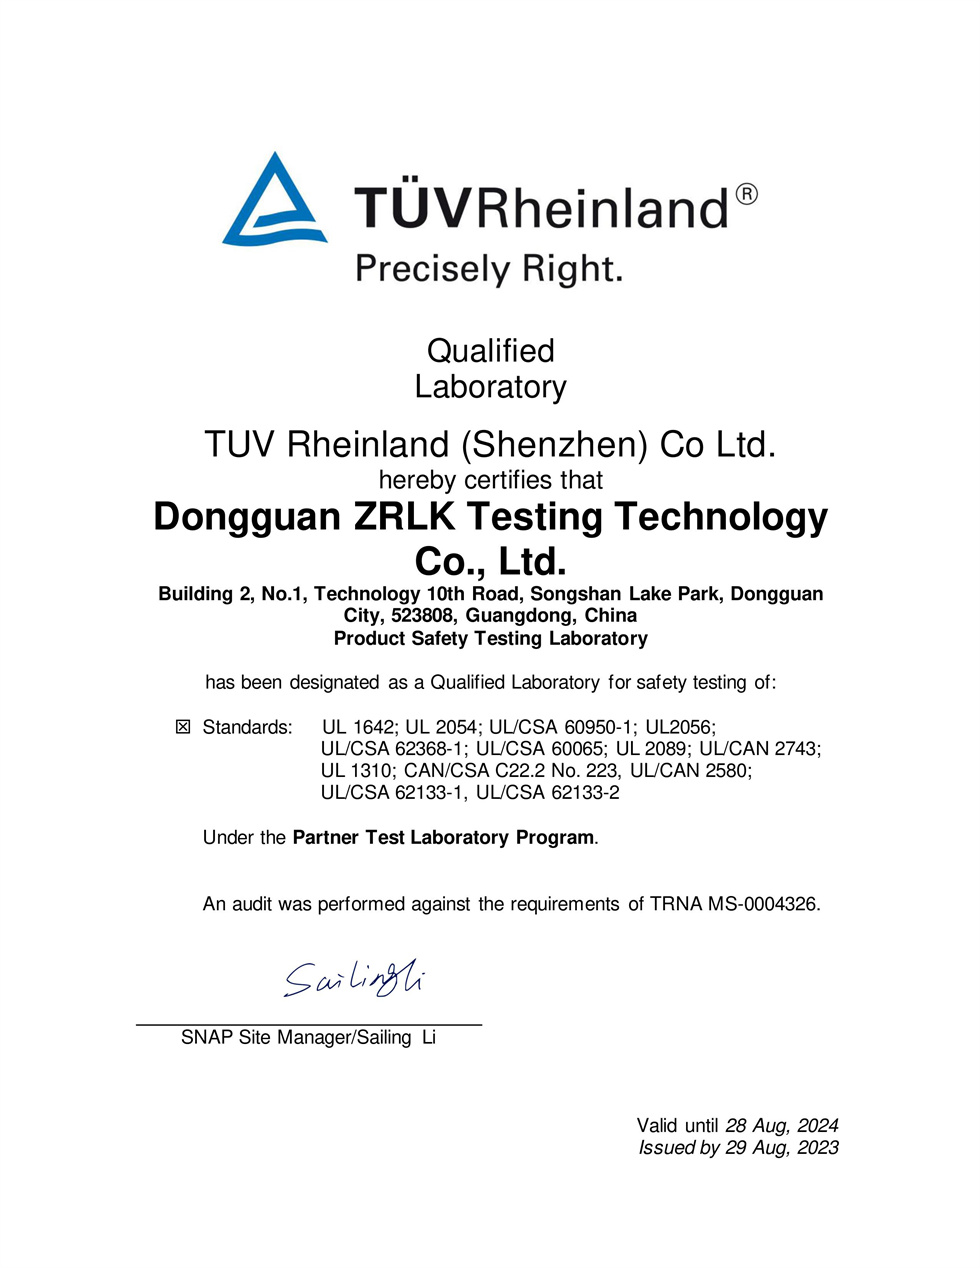 TUV Rhine PTL Certificate